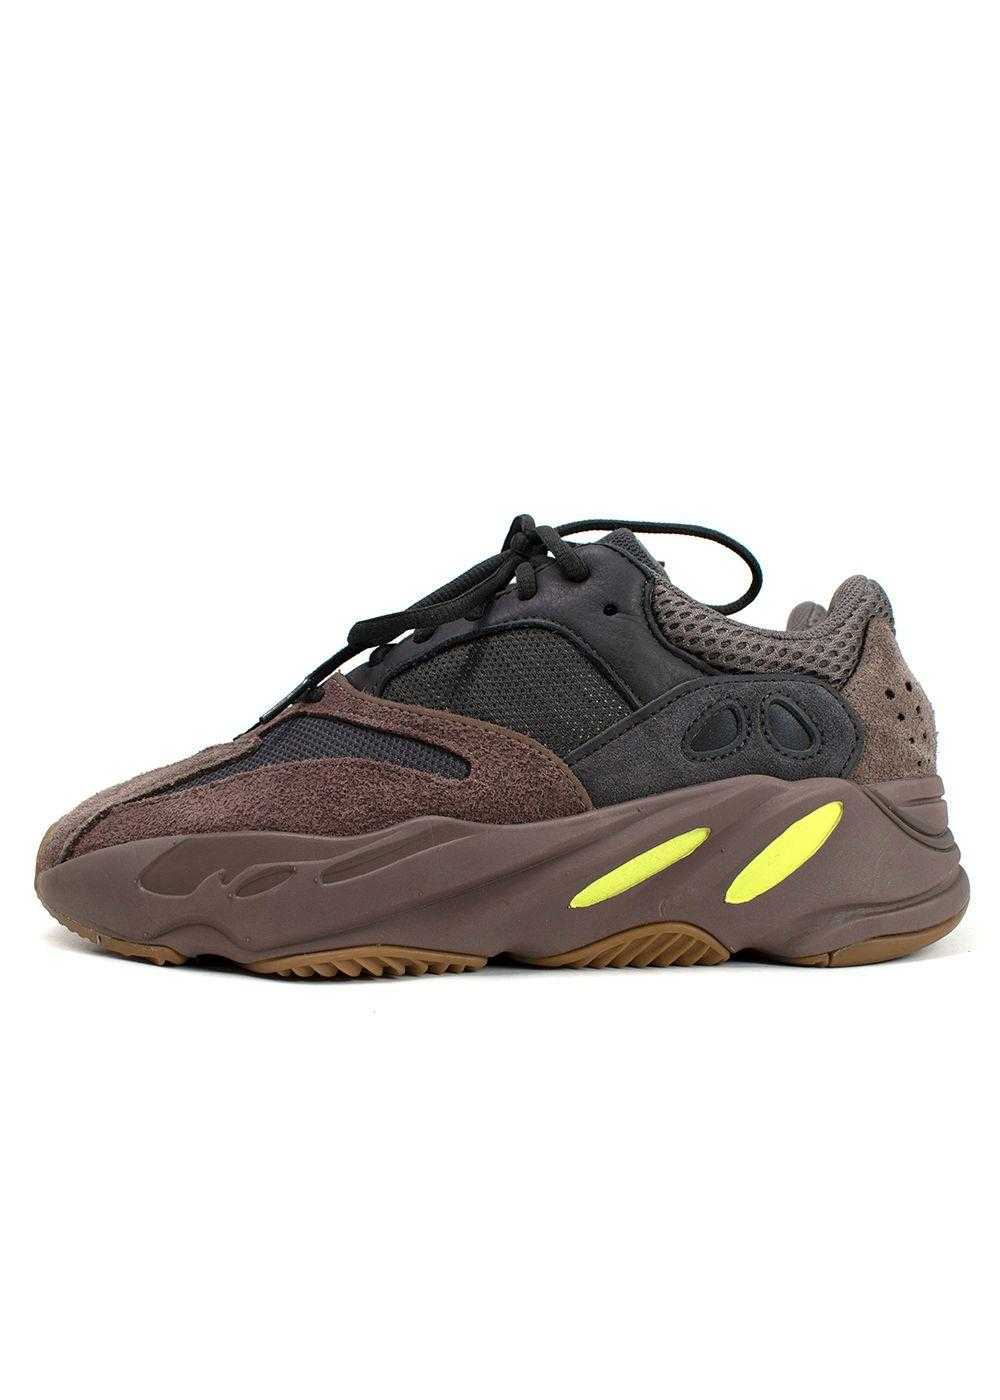 Yeezy x Adidas Yeezy Boost 700 Mauve Sneakers - image 4